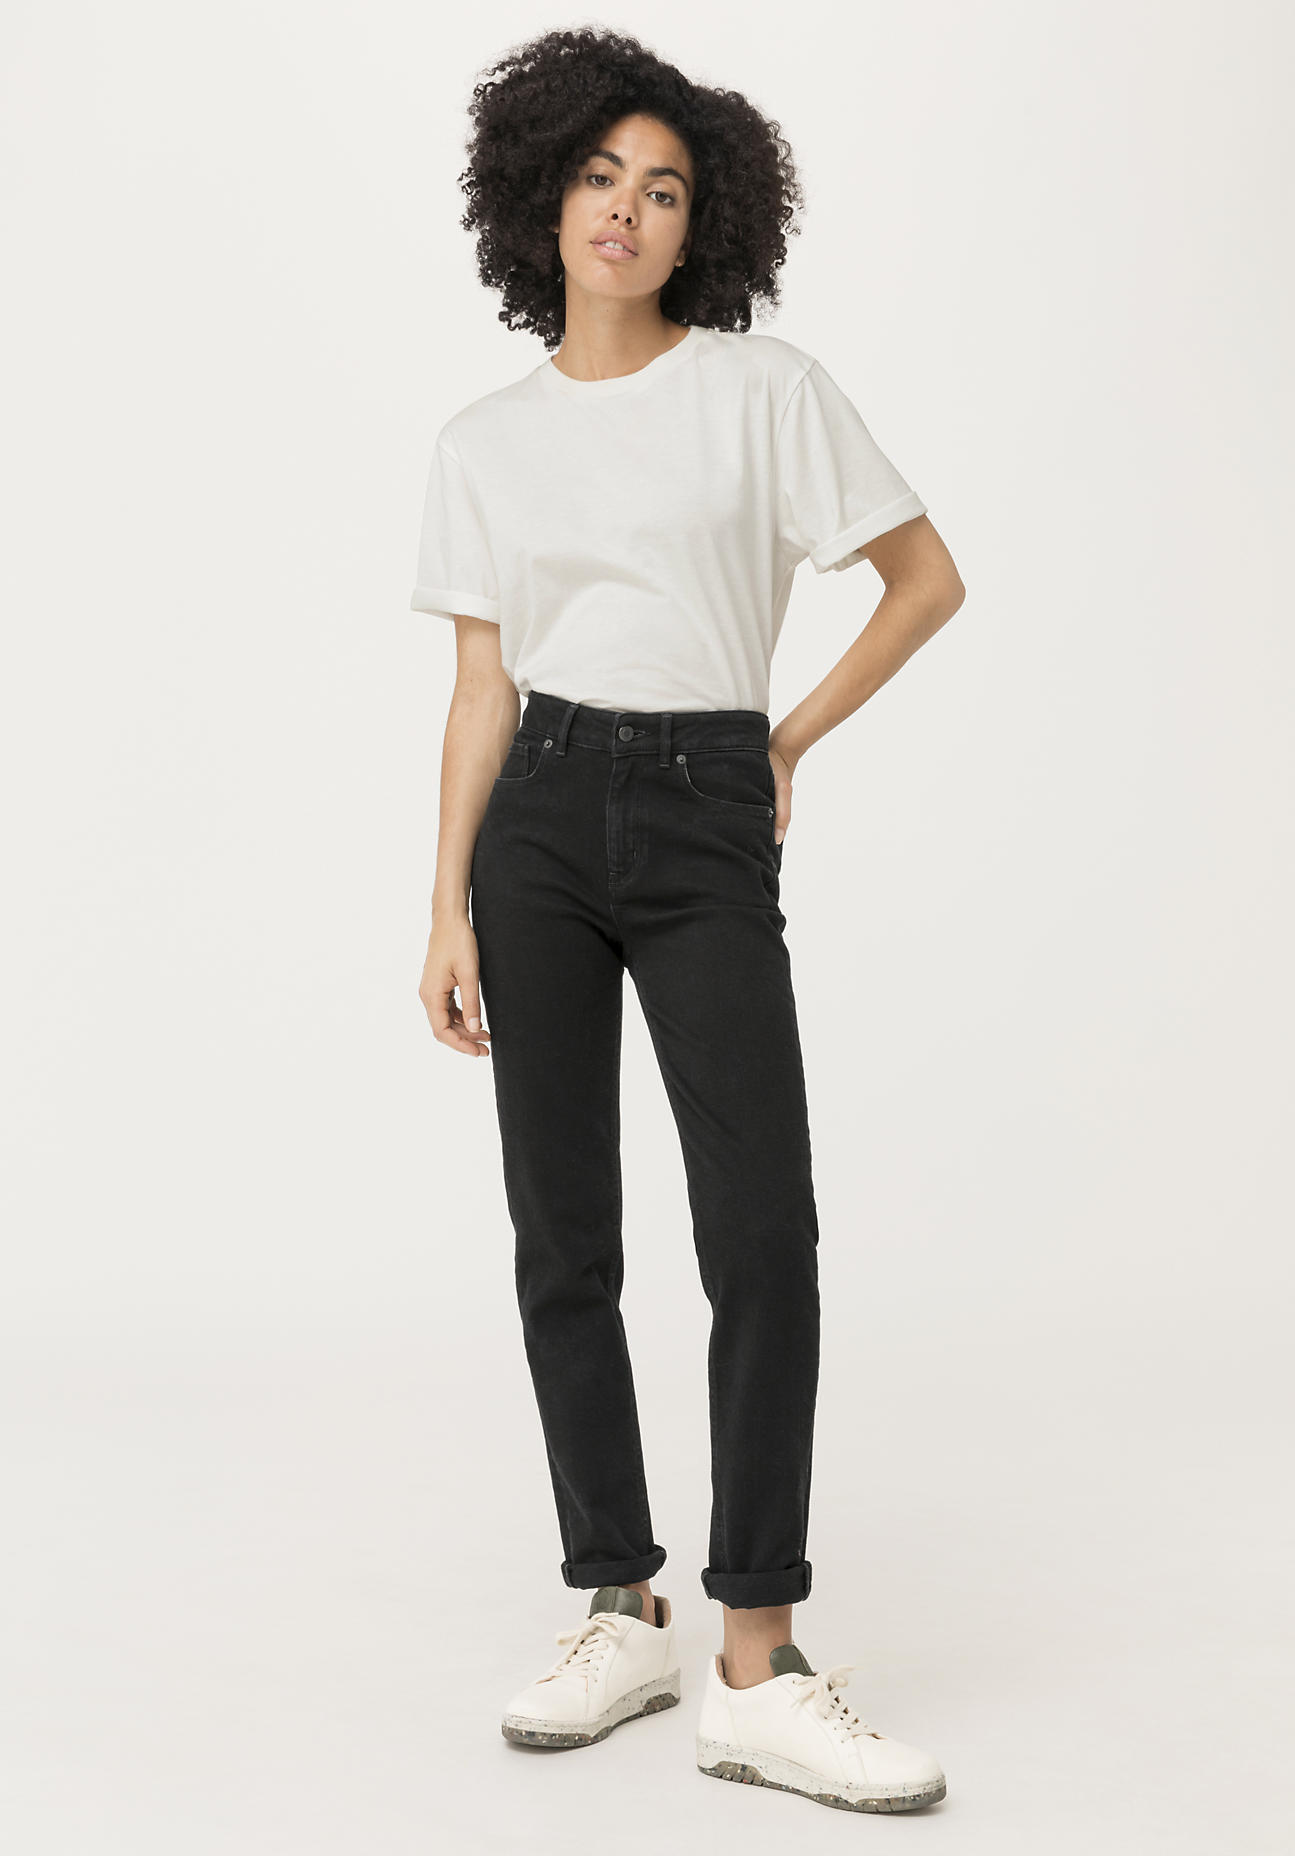 hessnatur Damen Jeans High Rise aus COREVA™ Bio-Denim - schwarz - Größe 30/30